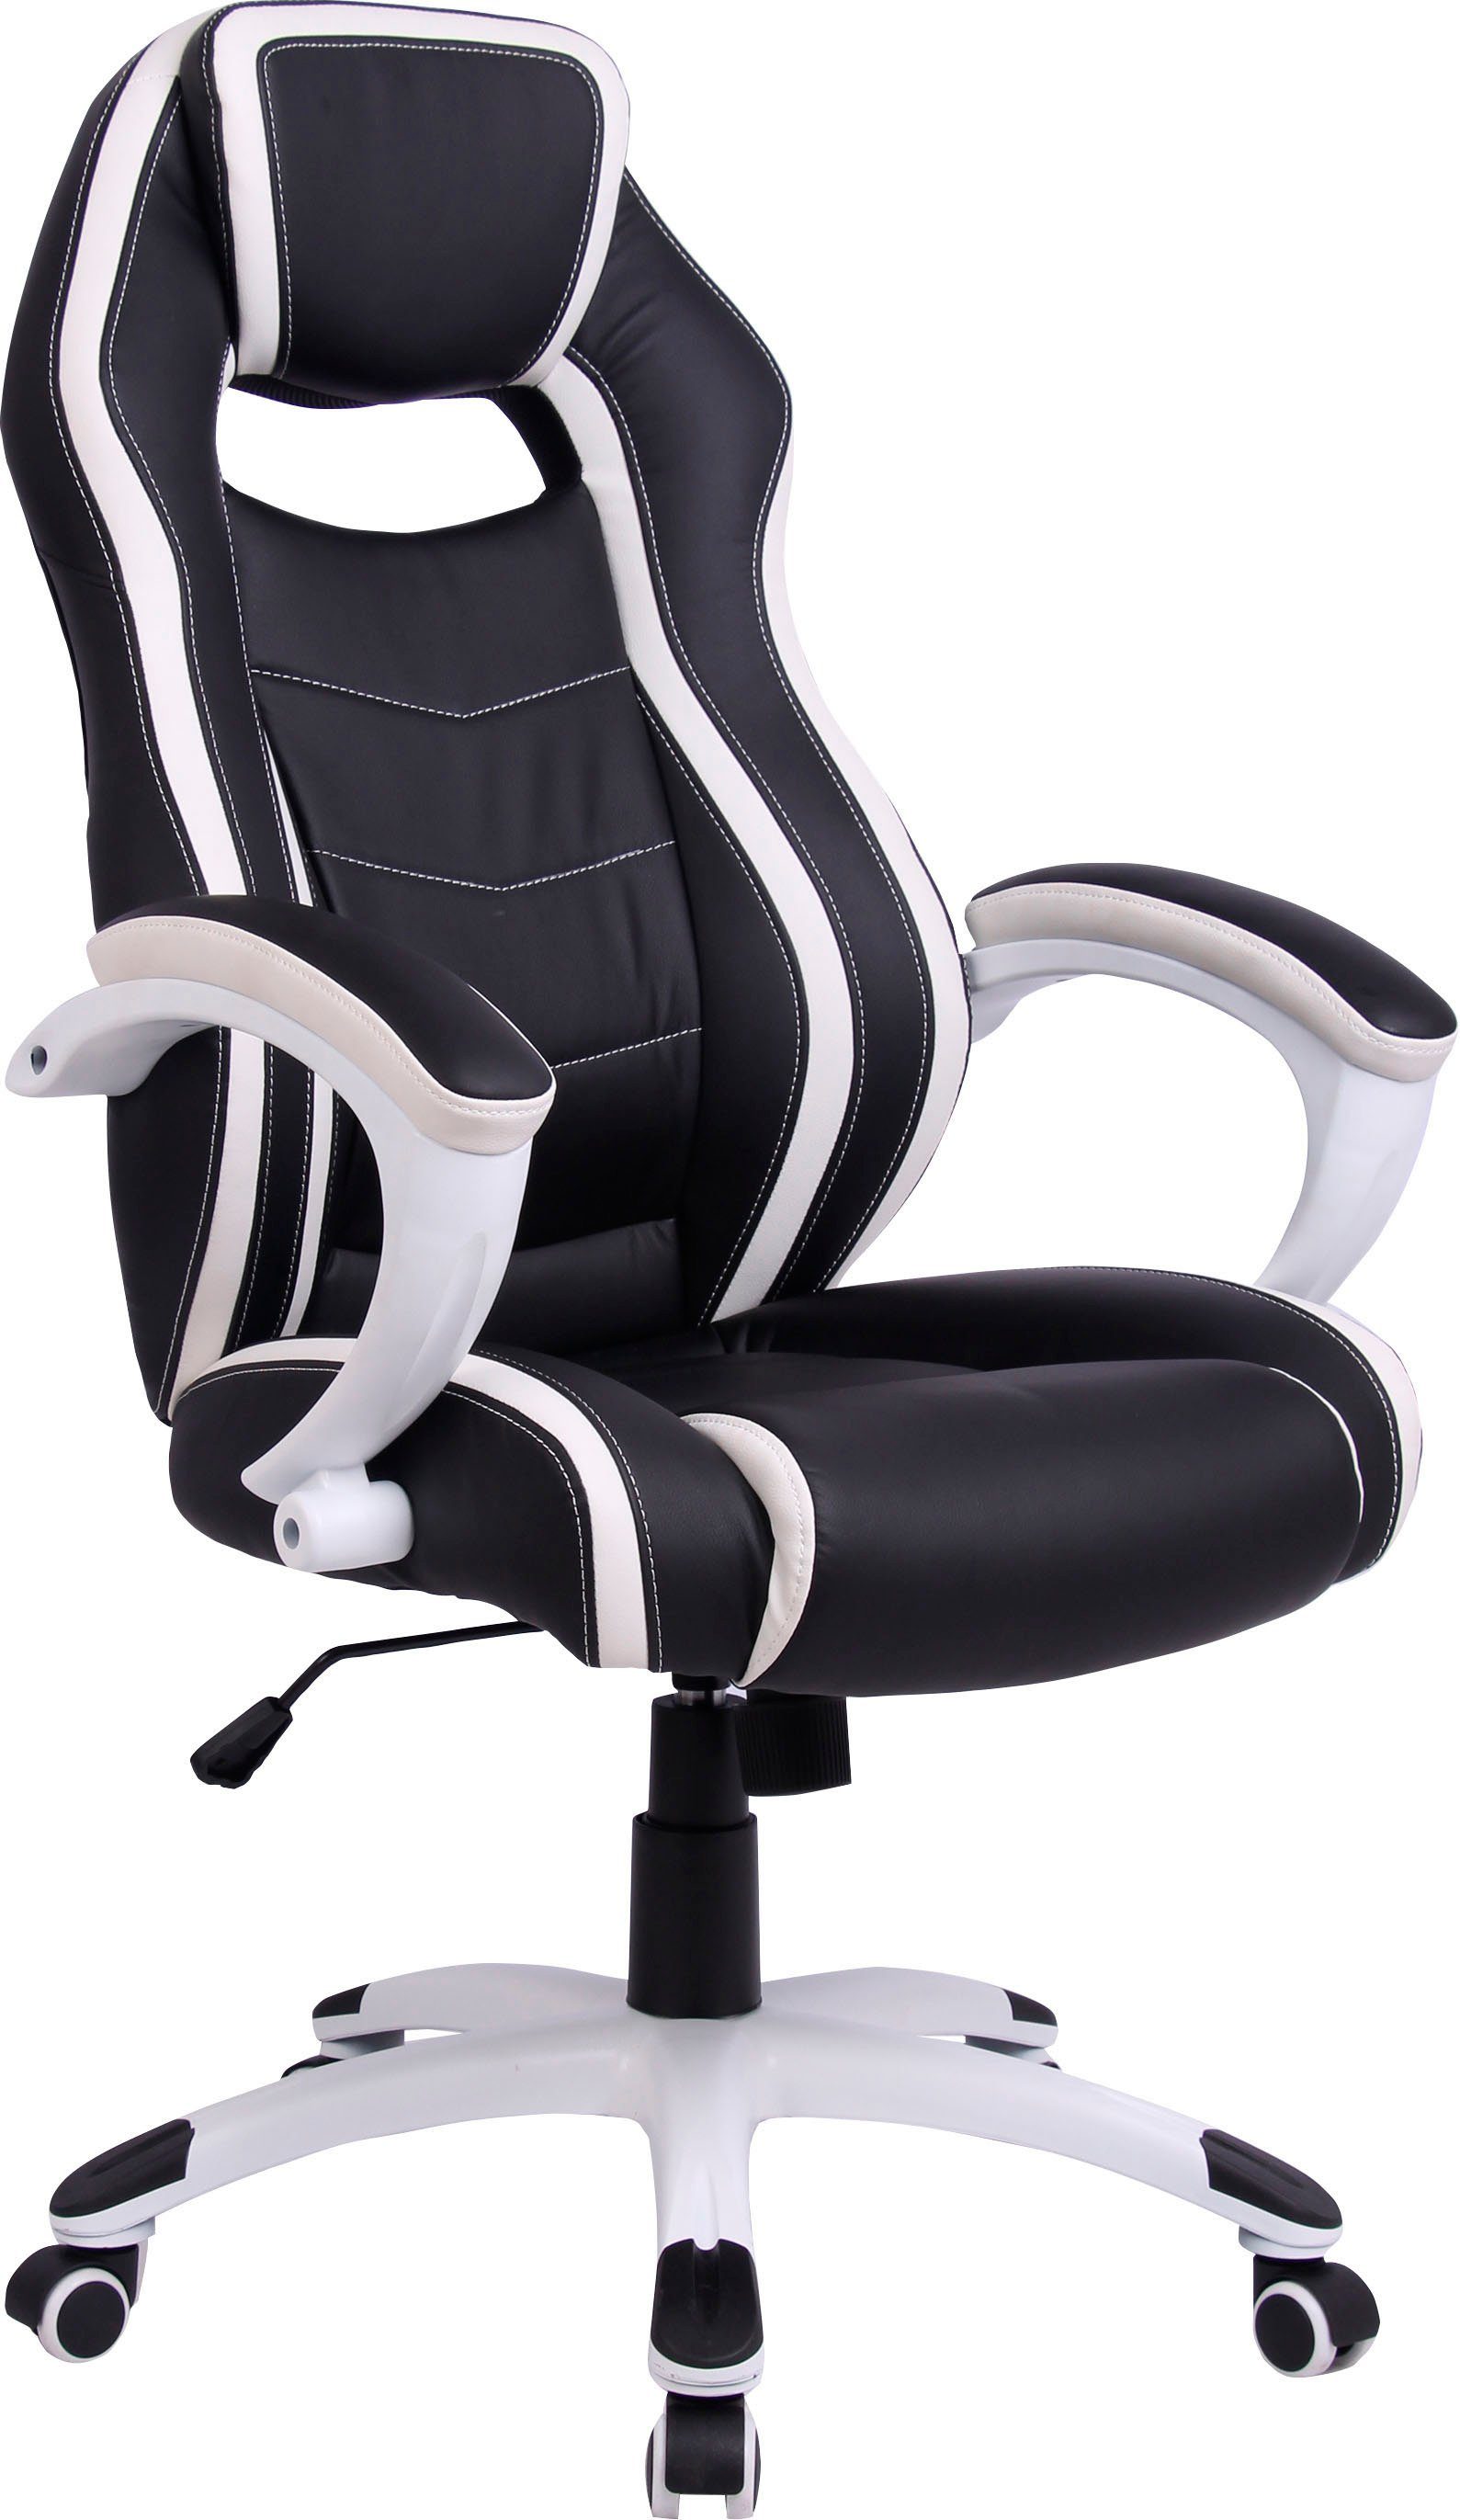 byLIVING Gaming-Stuhl Sydney, gemütlicher Chefsessel mit hohem Rücken und Wippmechanik